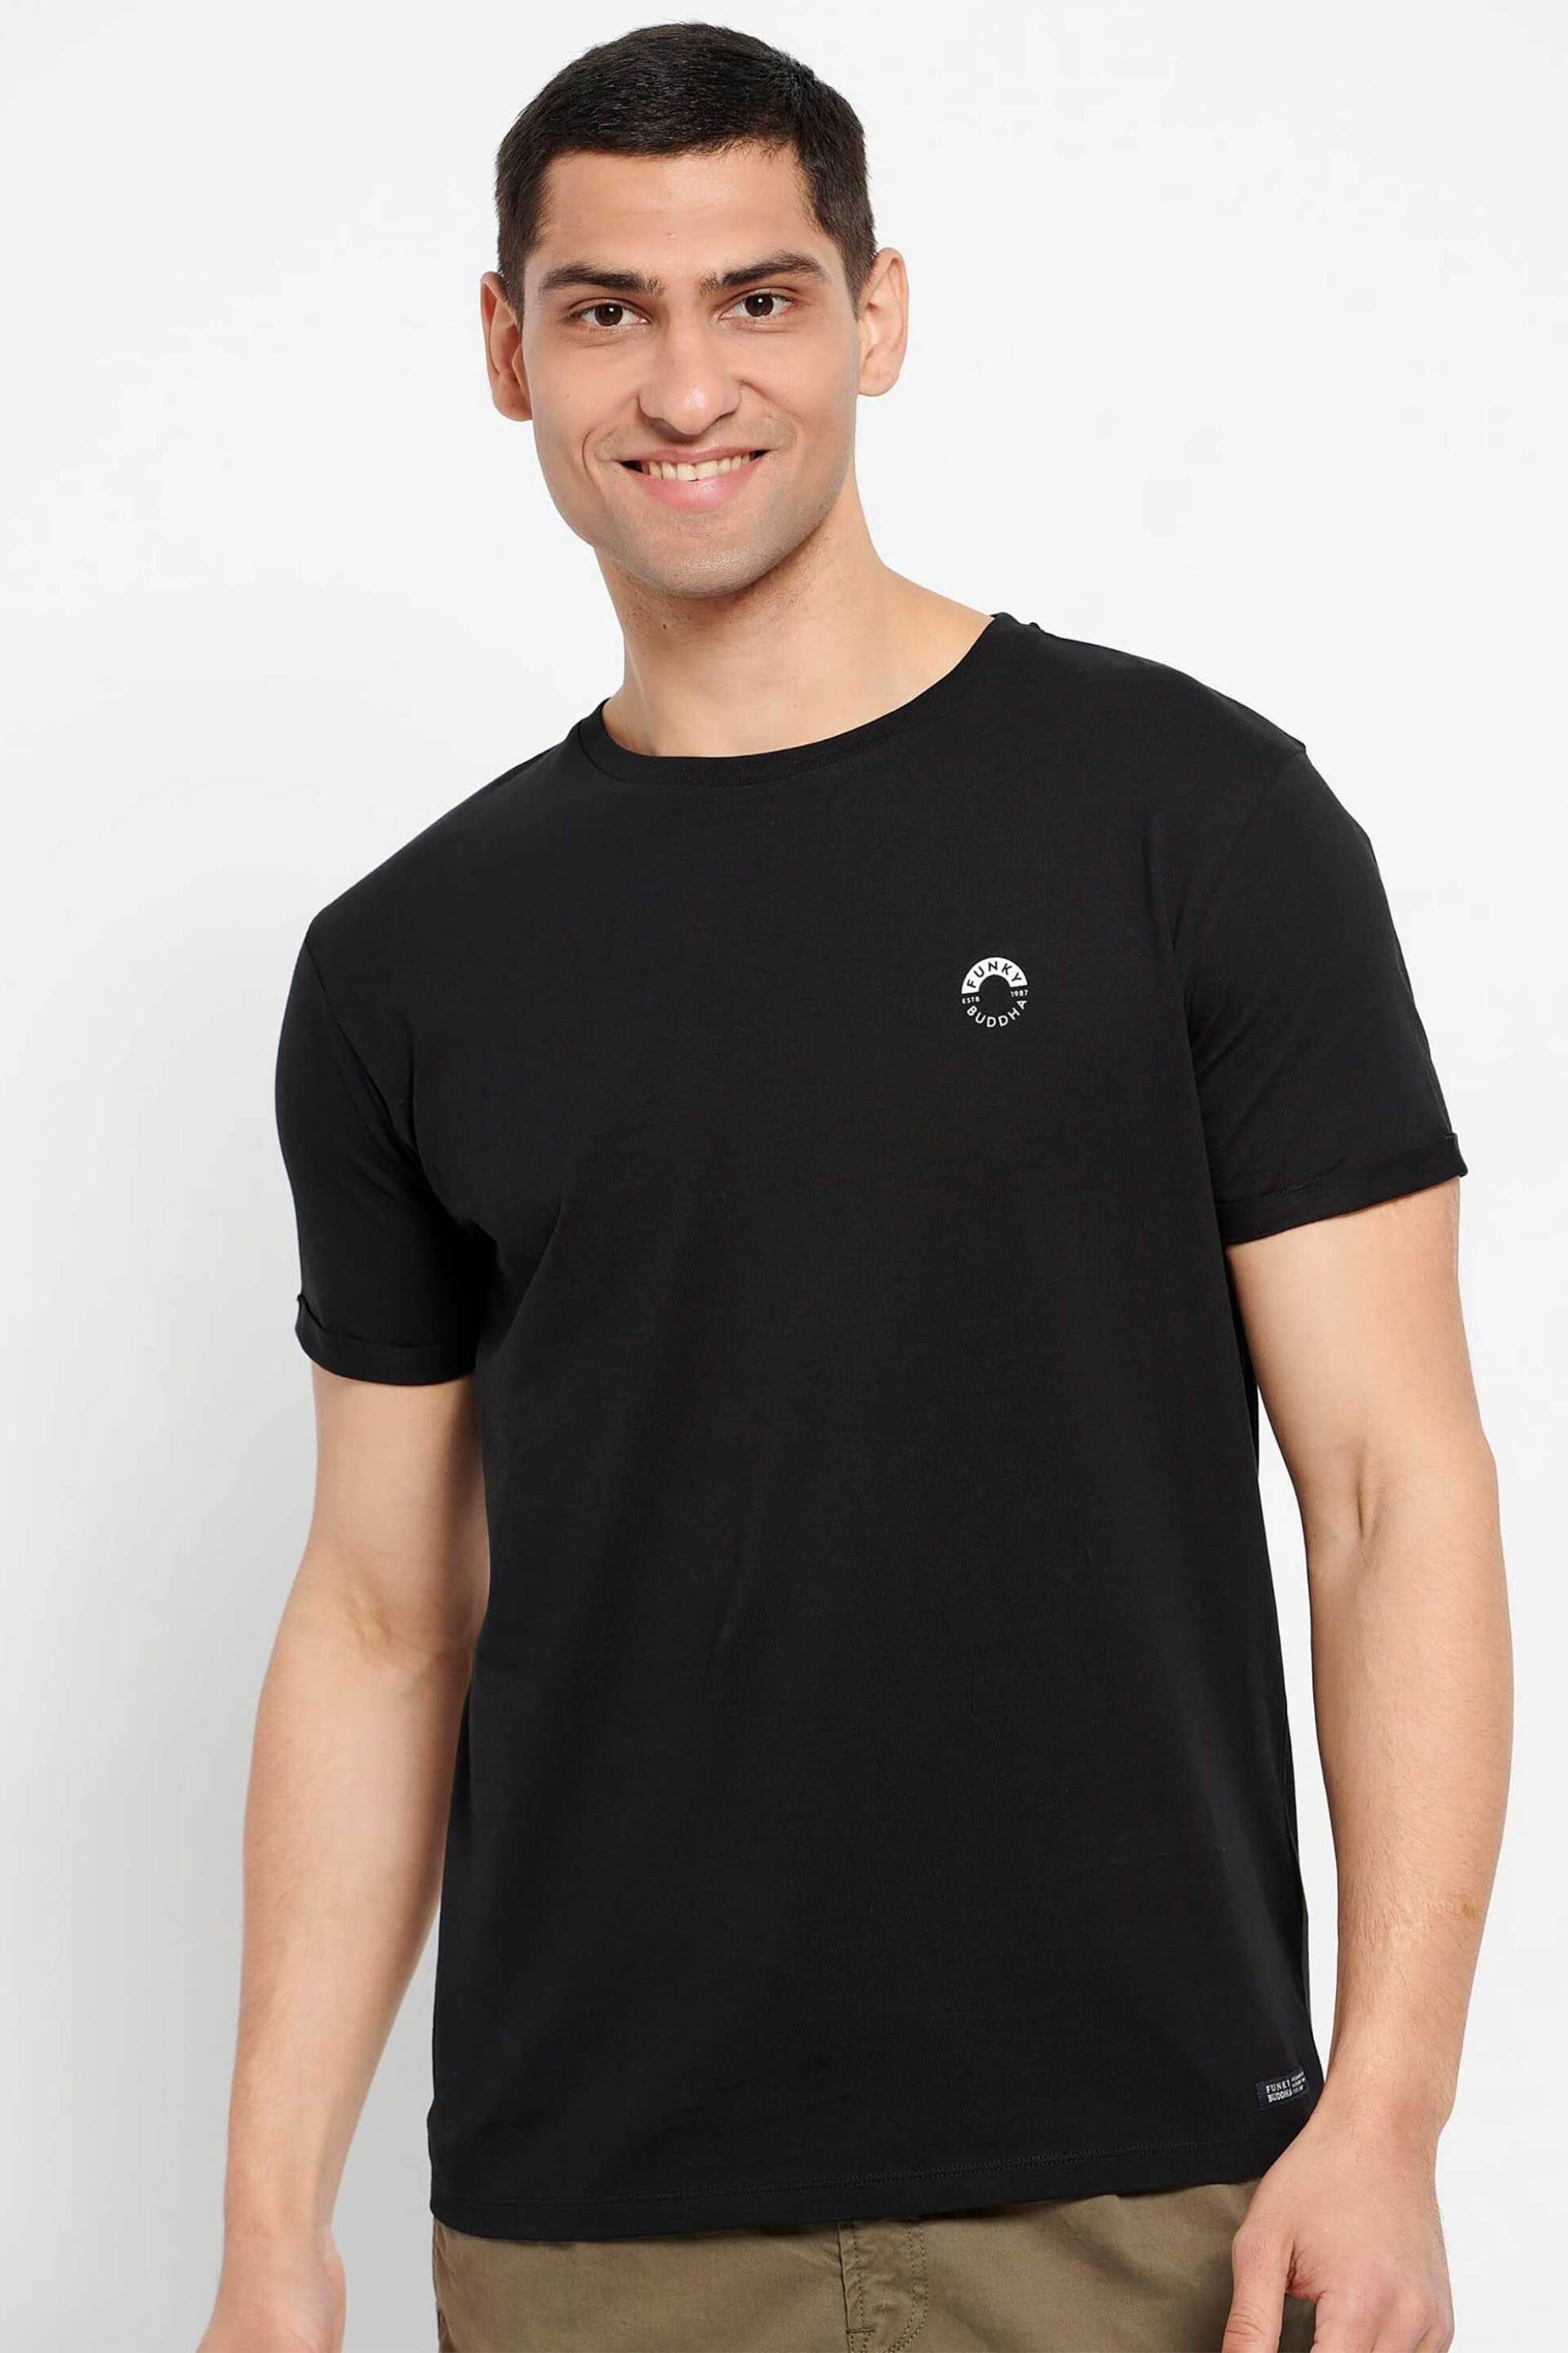 Ανδρική Μόδα > Ανδρικά Ρούχα > Ανδρικές Μπλούζες > Ανδρικά T-Shirts Funky Buddha ανδρικό βαμβακερό T-shirt μονόχρωμο με contrast logo print και patch - FBM007-010-04 Μαύρο